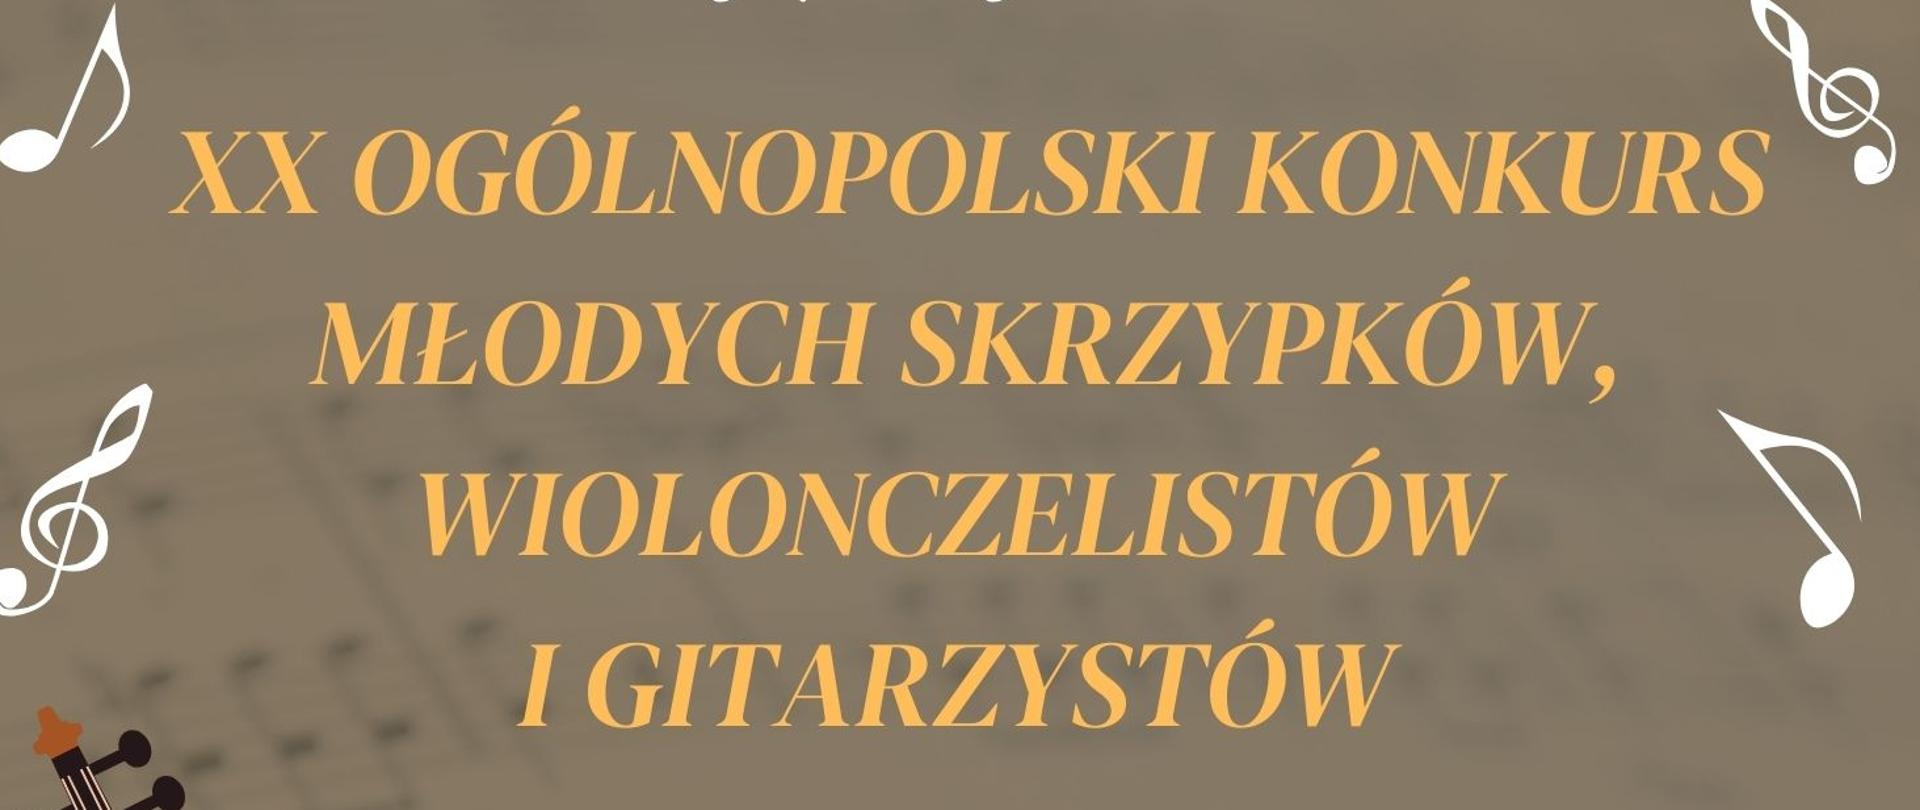 Plakat przedstawiający ikonki skrzypiec, wiolonczeli i gitary. XX ogólnopolski konkurs młodych skrzypków, wiolonczelistów i gitarzystów.26, 28 kwietnia 2023 roku.